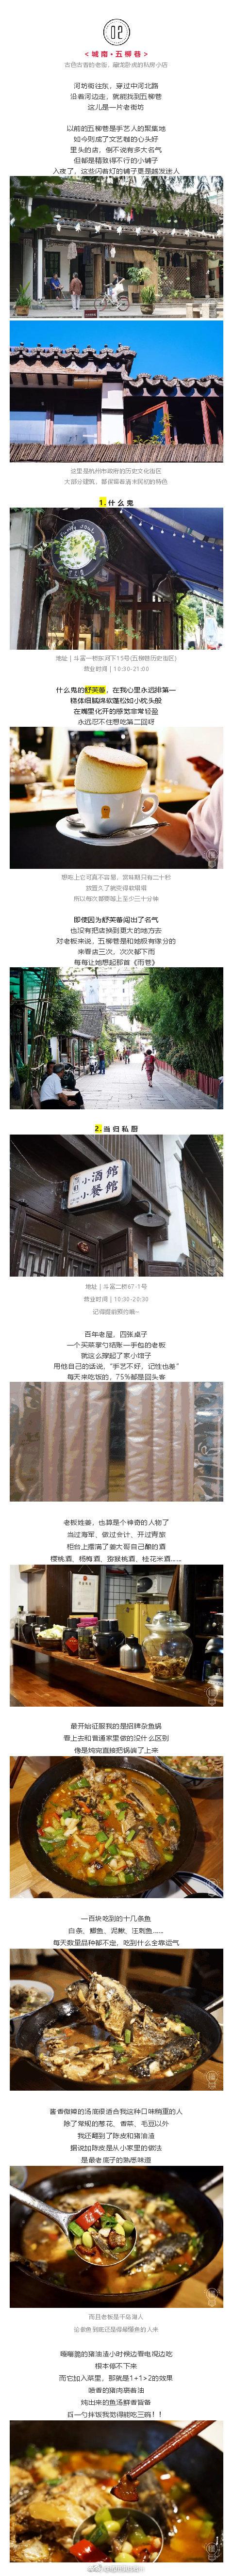 美食街杭州图片_杭州的美食街在哪里_杭州美食街哪条最火